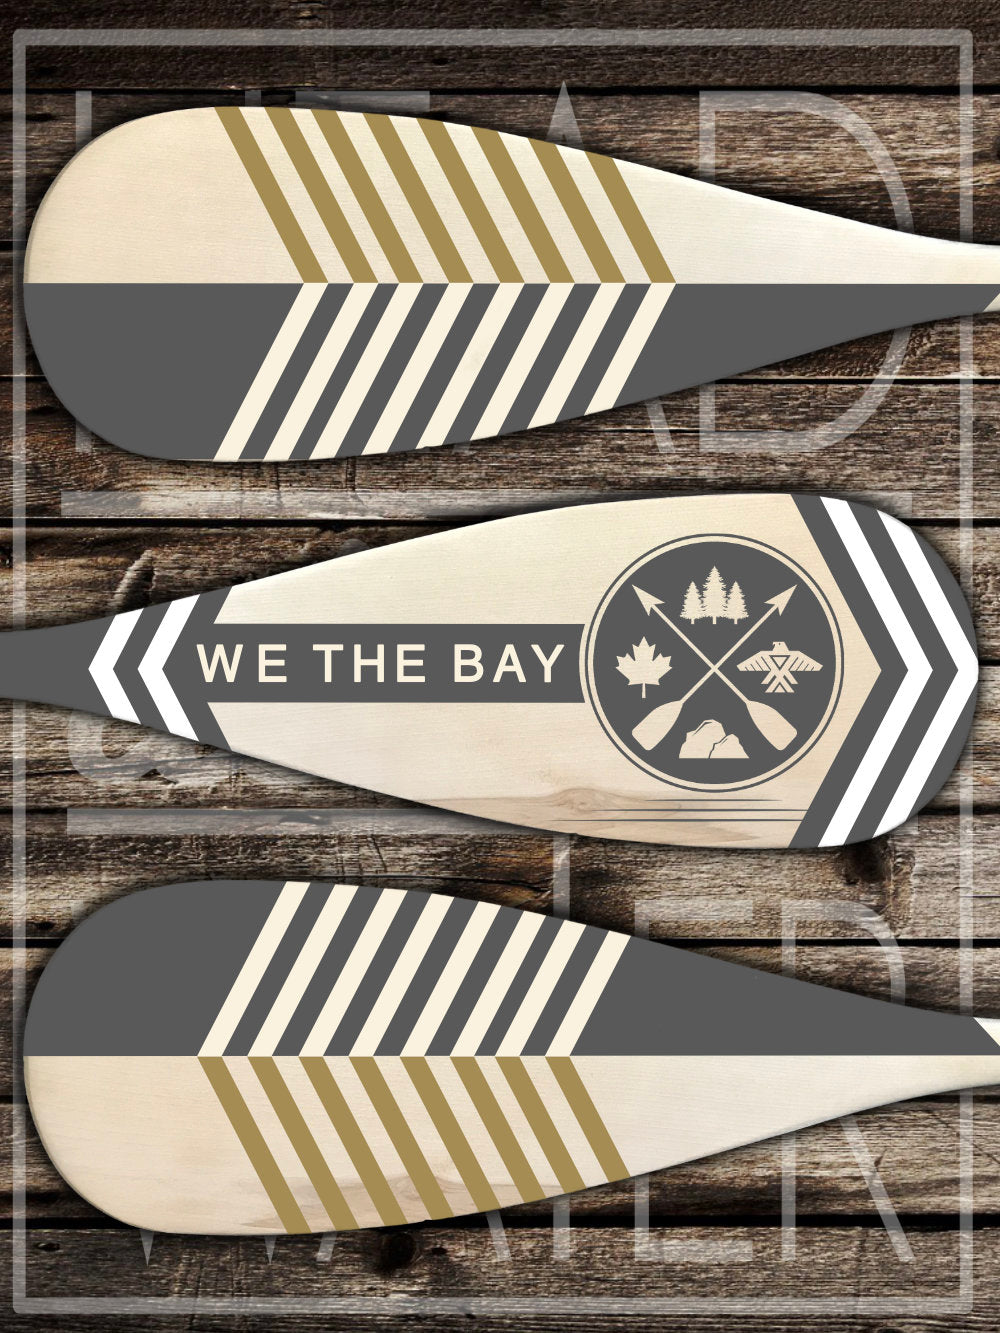 “We The Bay” Decorative Set of 3 Canoe Paddles - GREY & WHITE